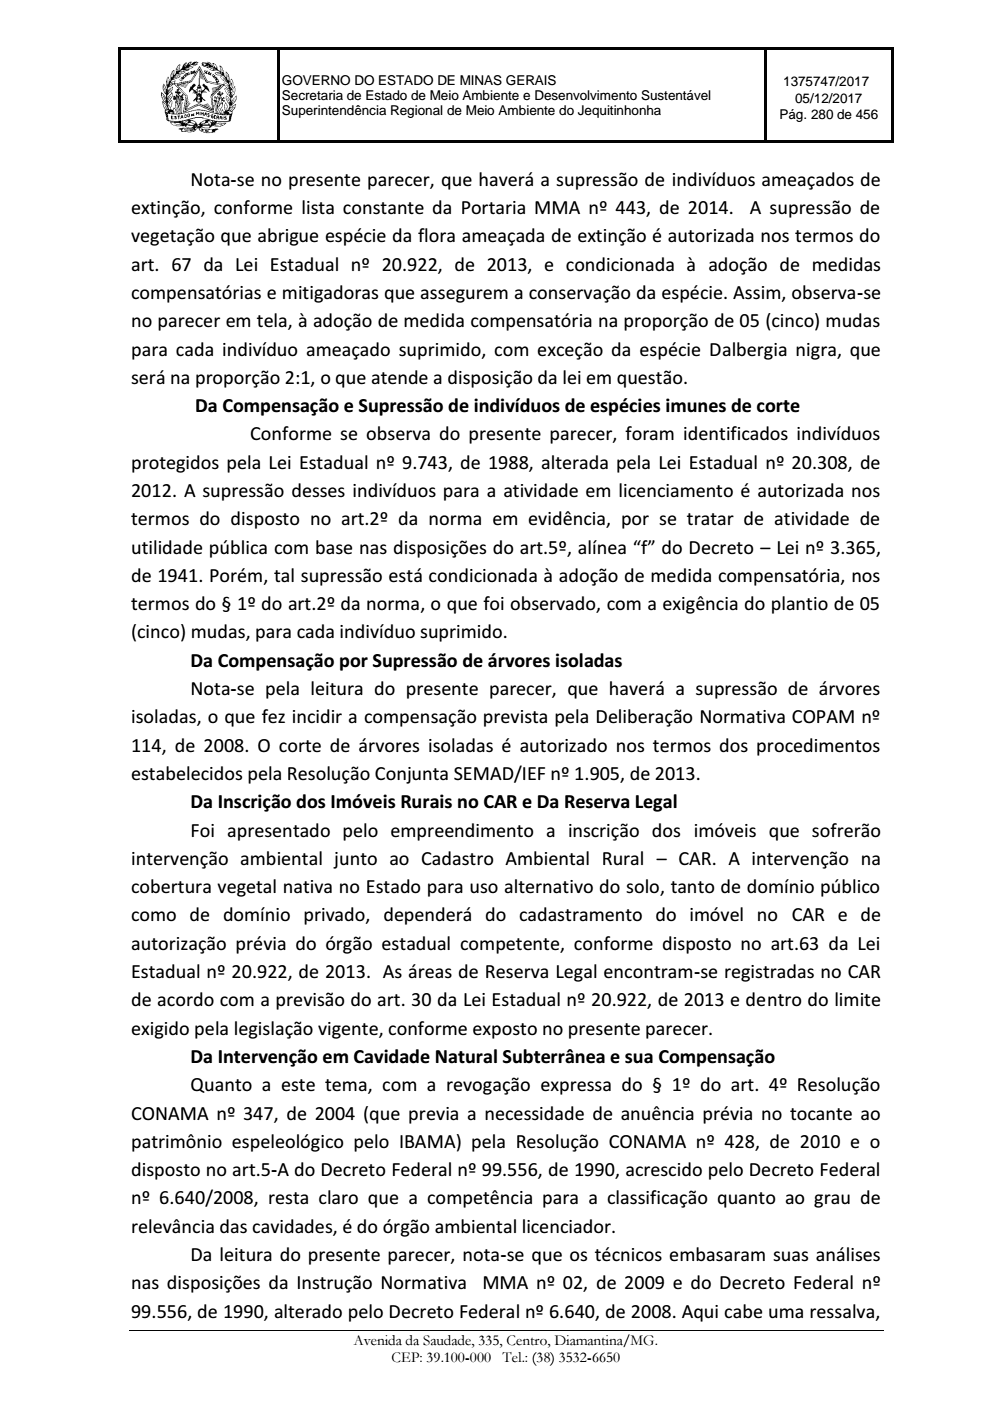 Page 280 from Parecer único da Secretaria de estado de Meio Ambiente e Desenvolvimento Sustentável (SEMAD)